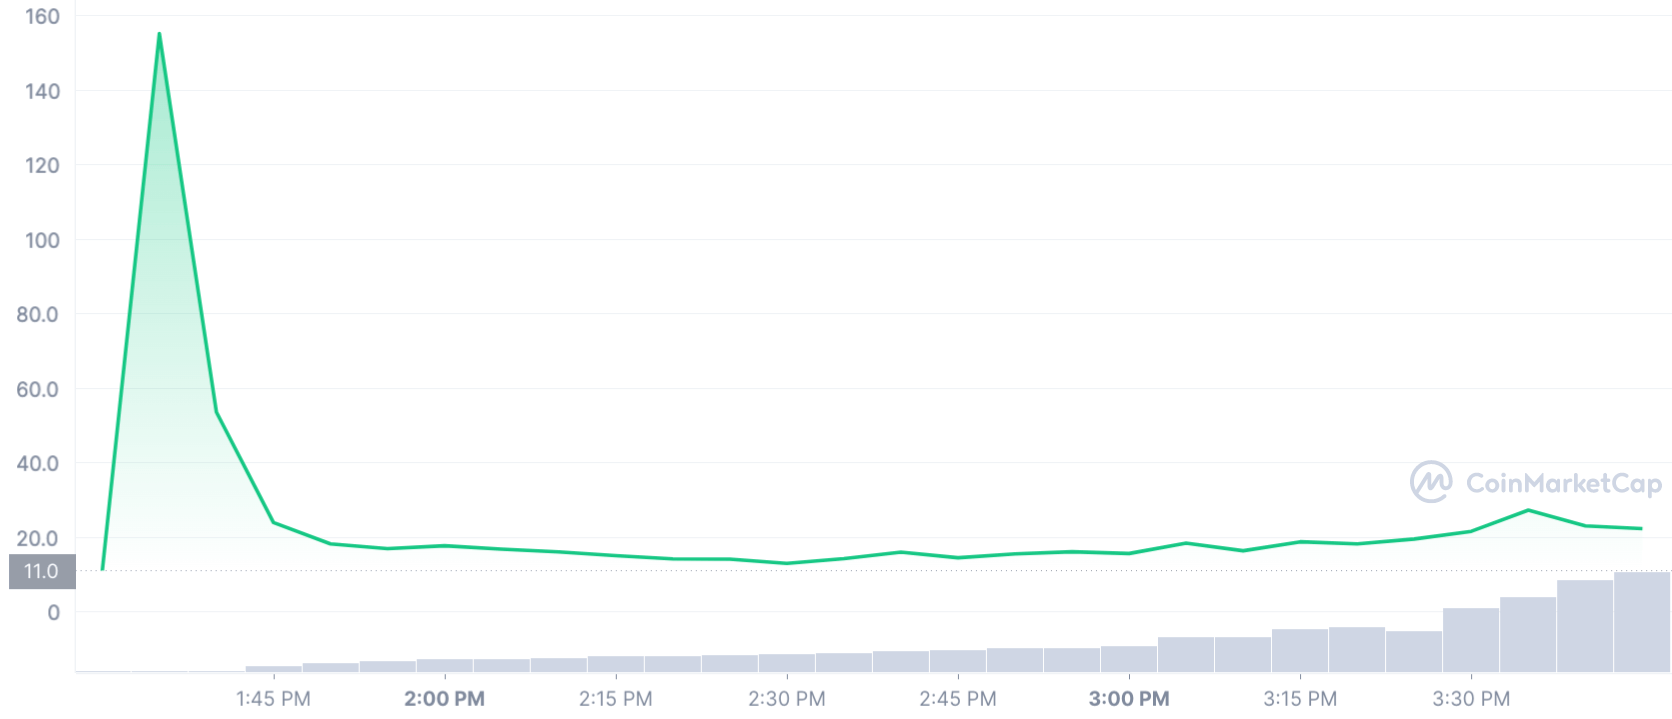 Graphique de Moonbeam à USD sur 24 heures (CoinMarketCap)